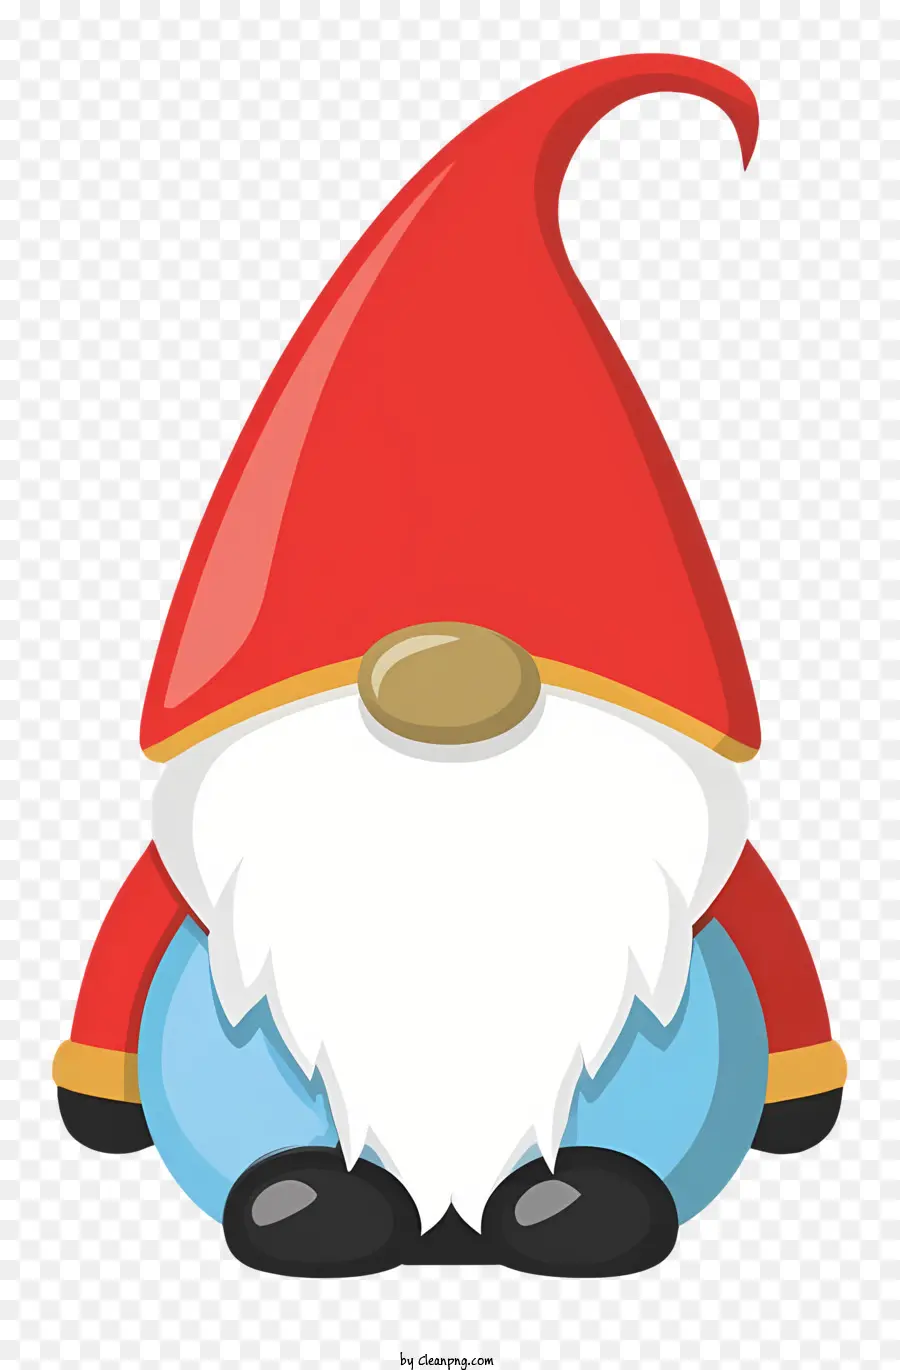 GNOME Charakter rotes Bartblau Hosen weißes Hemd blauer Hut - Anime Gnome -Charakter mit rotem Bart und blauen Kleidung